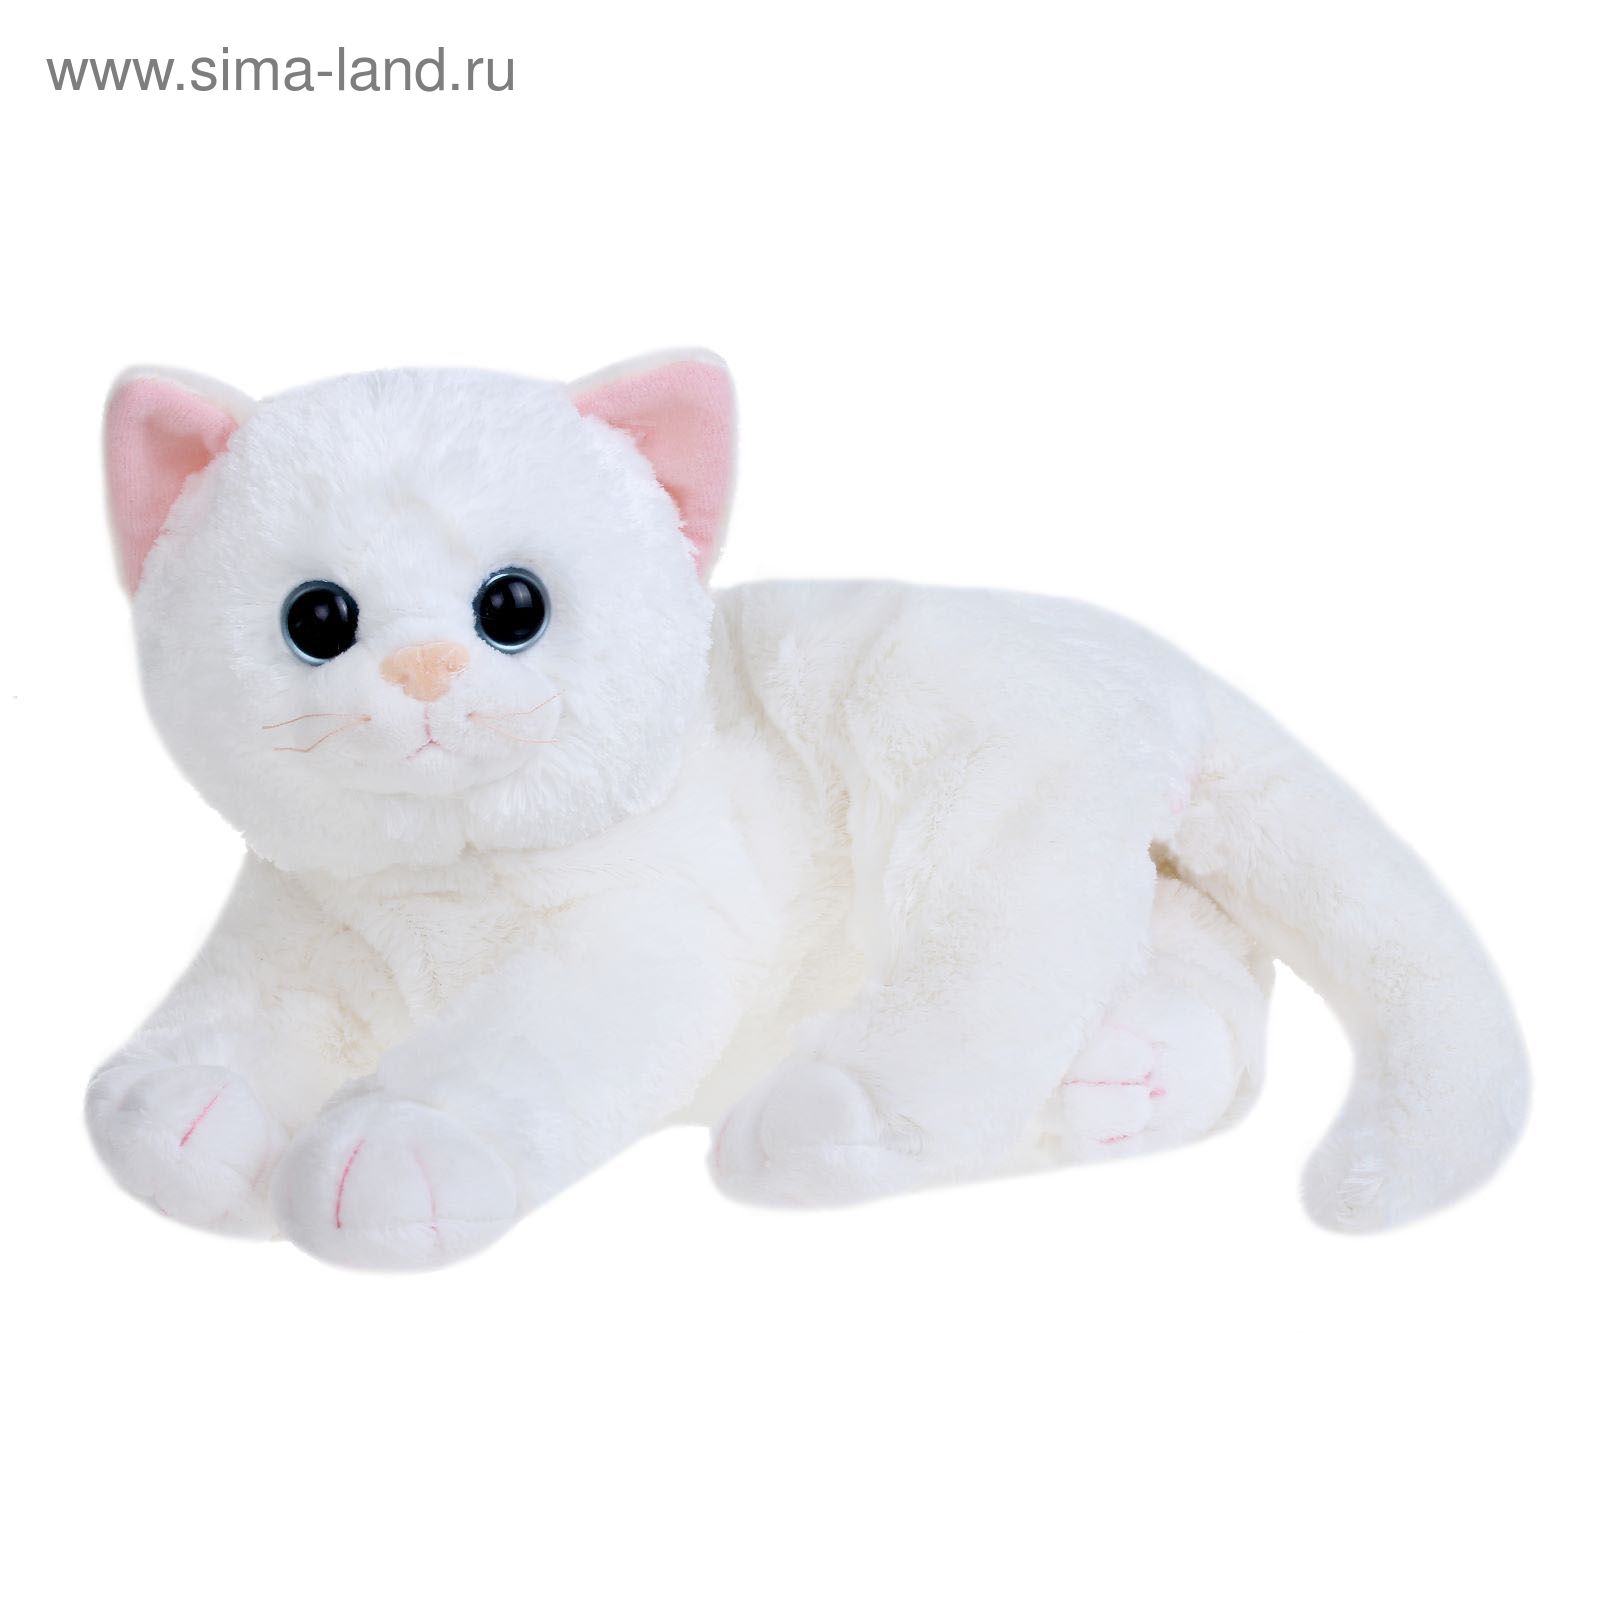 Купить кошку в ярославле. Мягкая игрушка кошка. Мягкая игрушка кошка белая. Белый котенок игрушка.